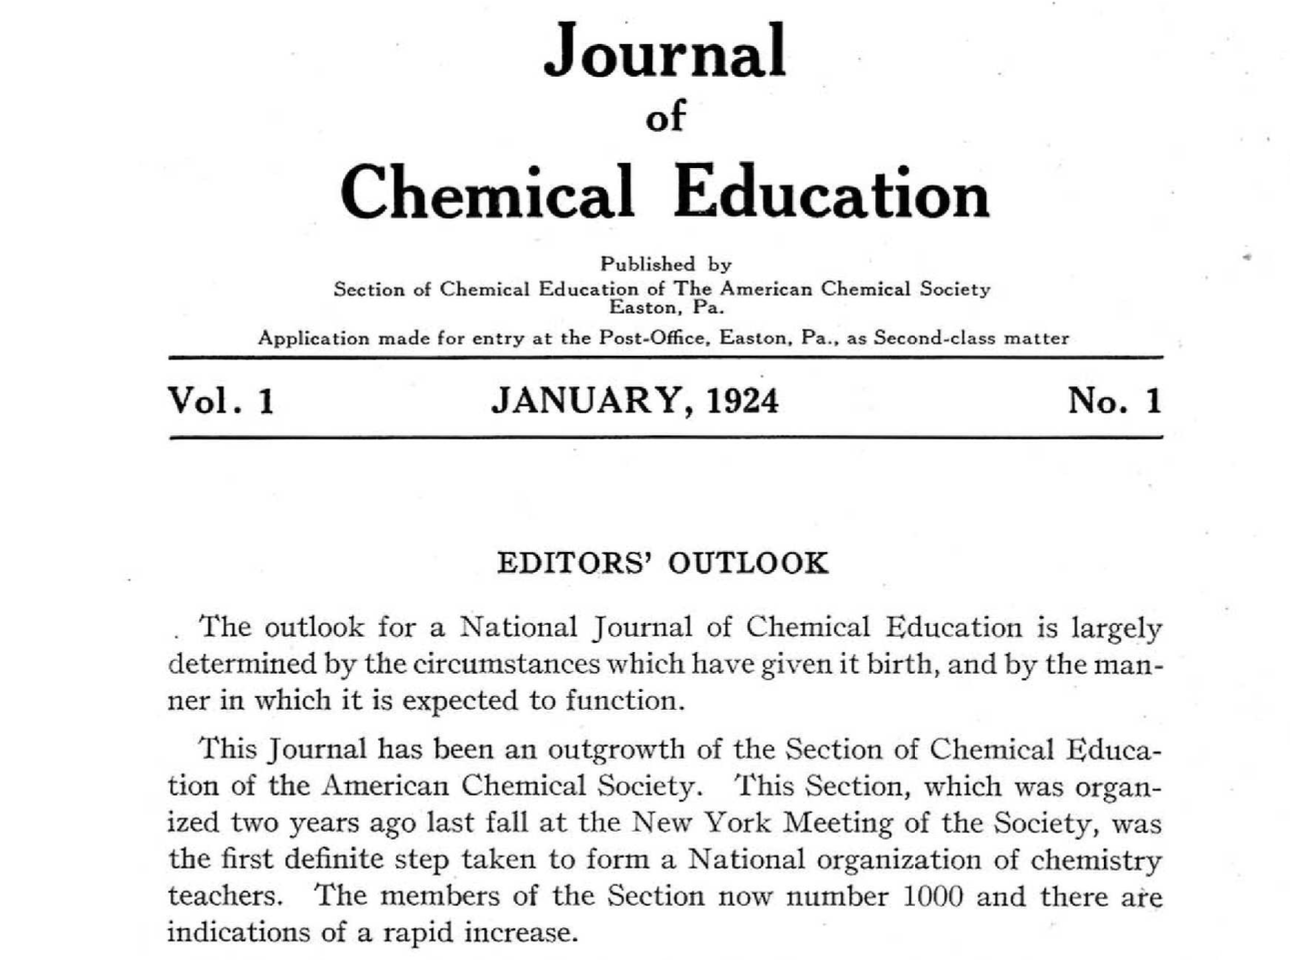 First edition of JCE